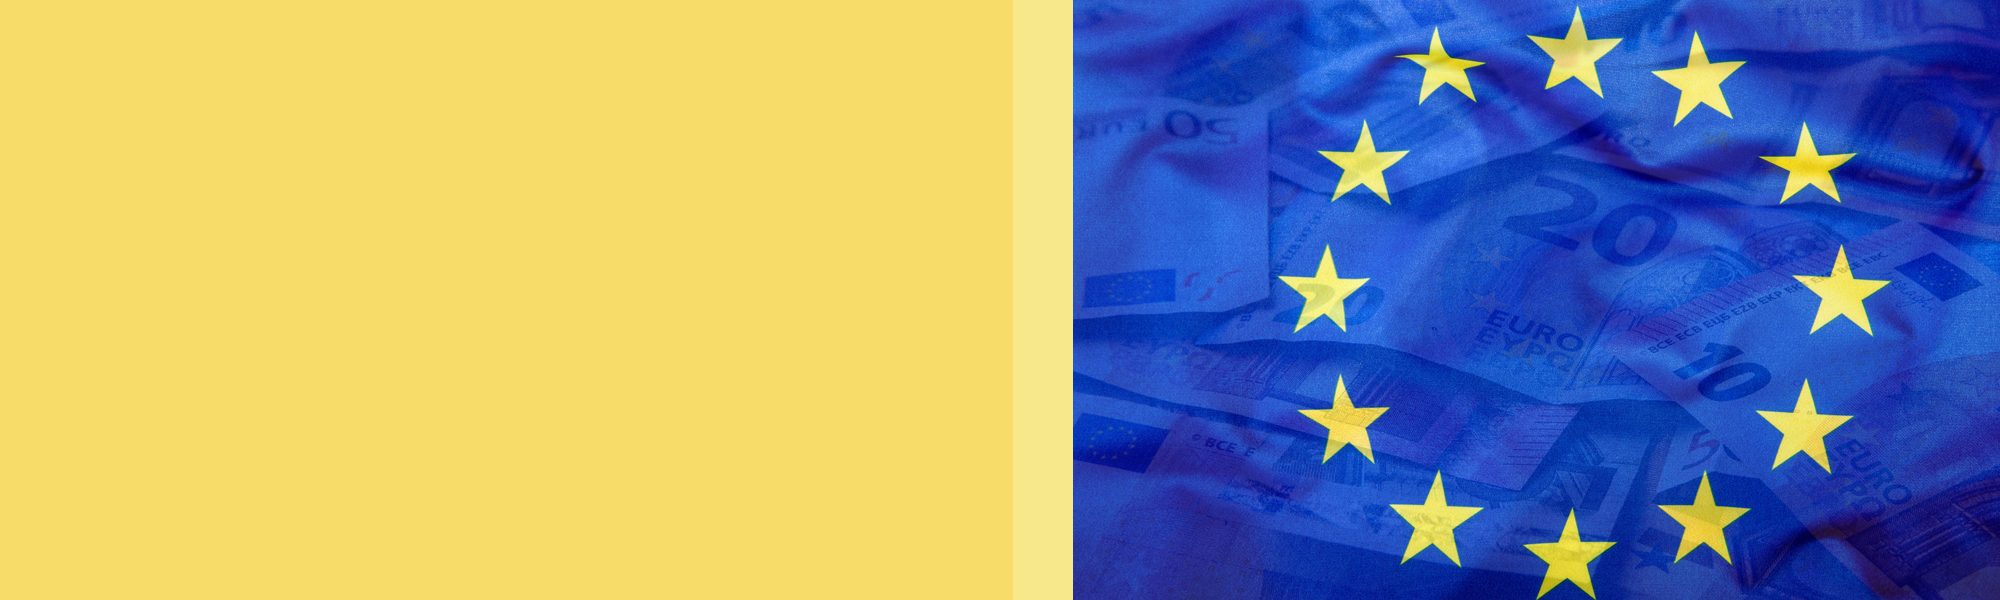 European Union VAT Changes article header